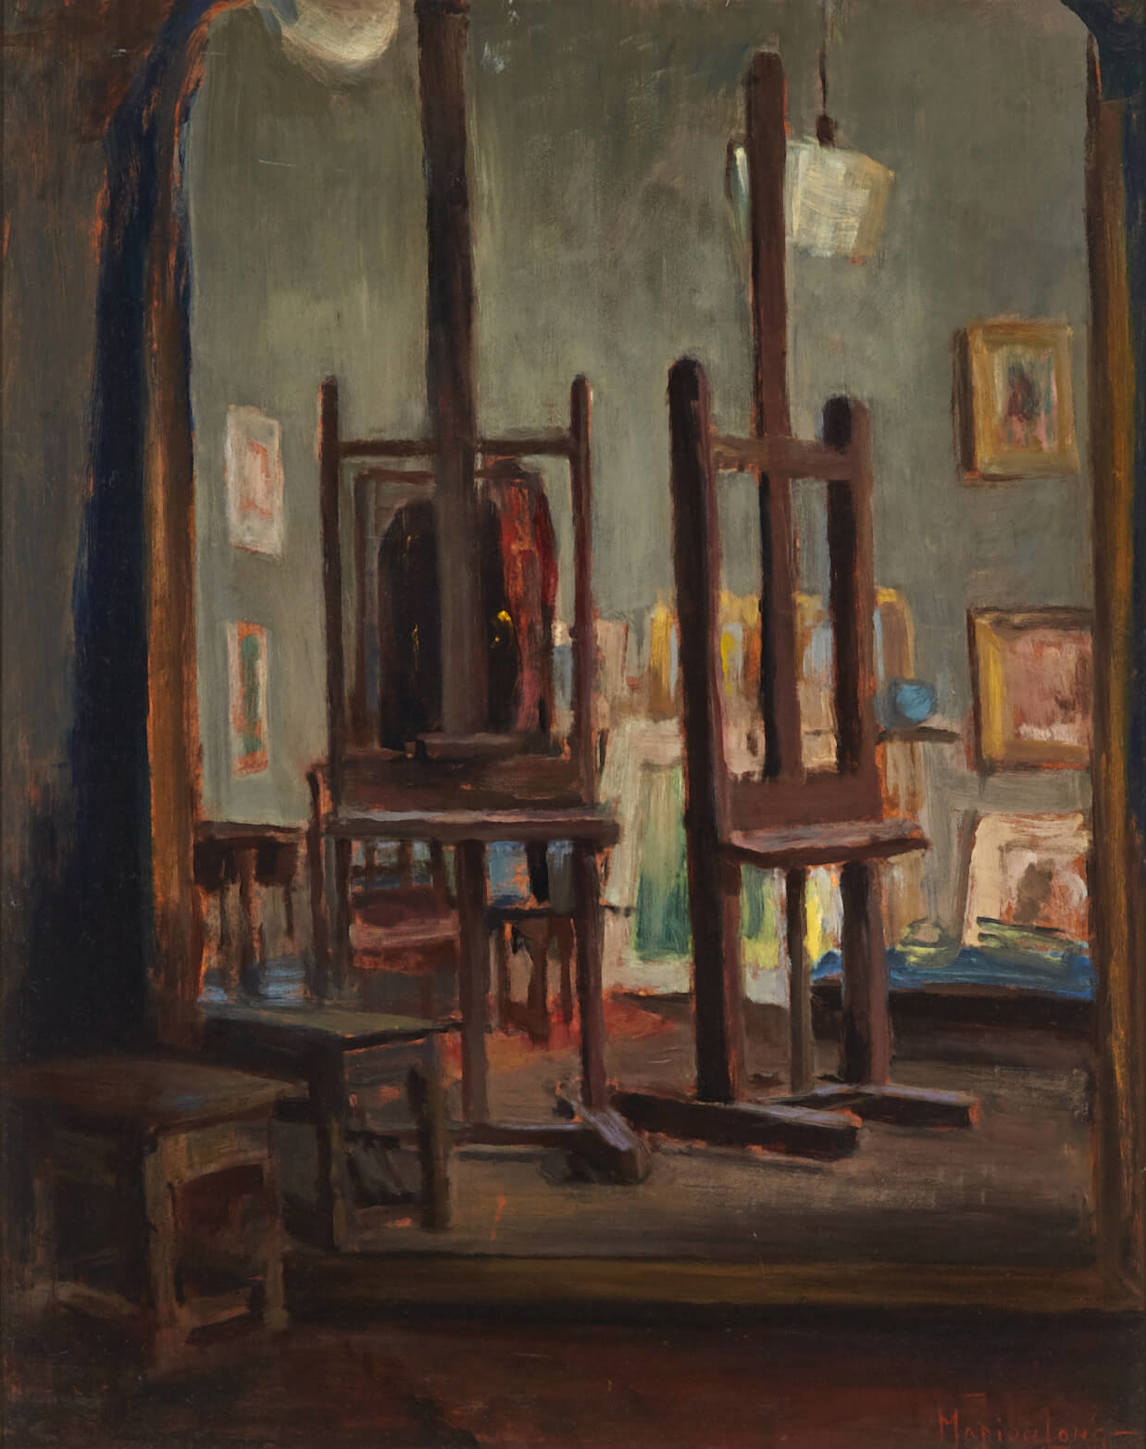 Marion Long, The Artist's Studio, n.d.